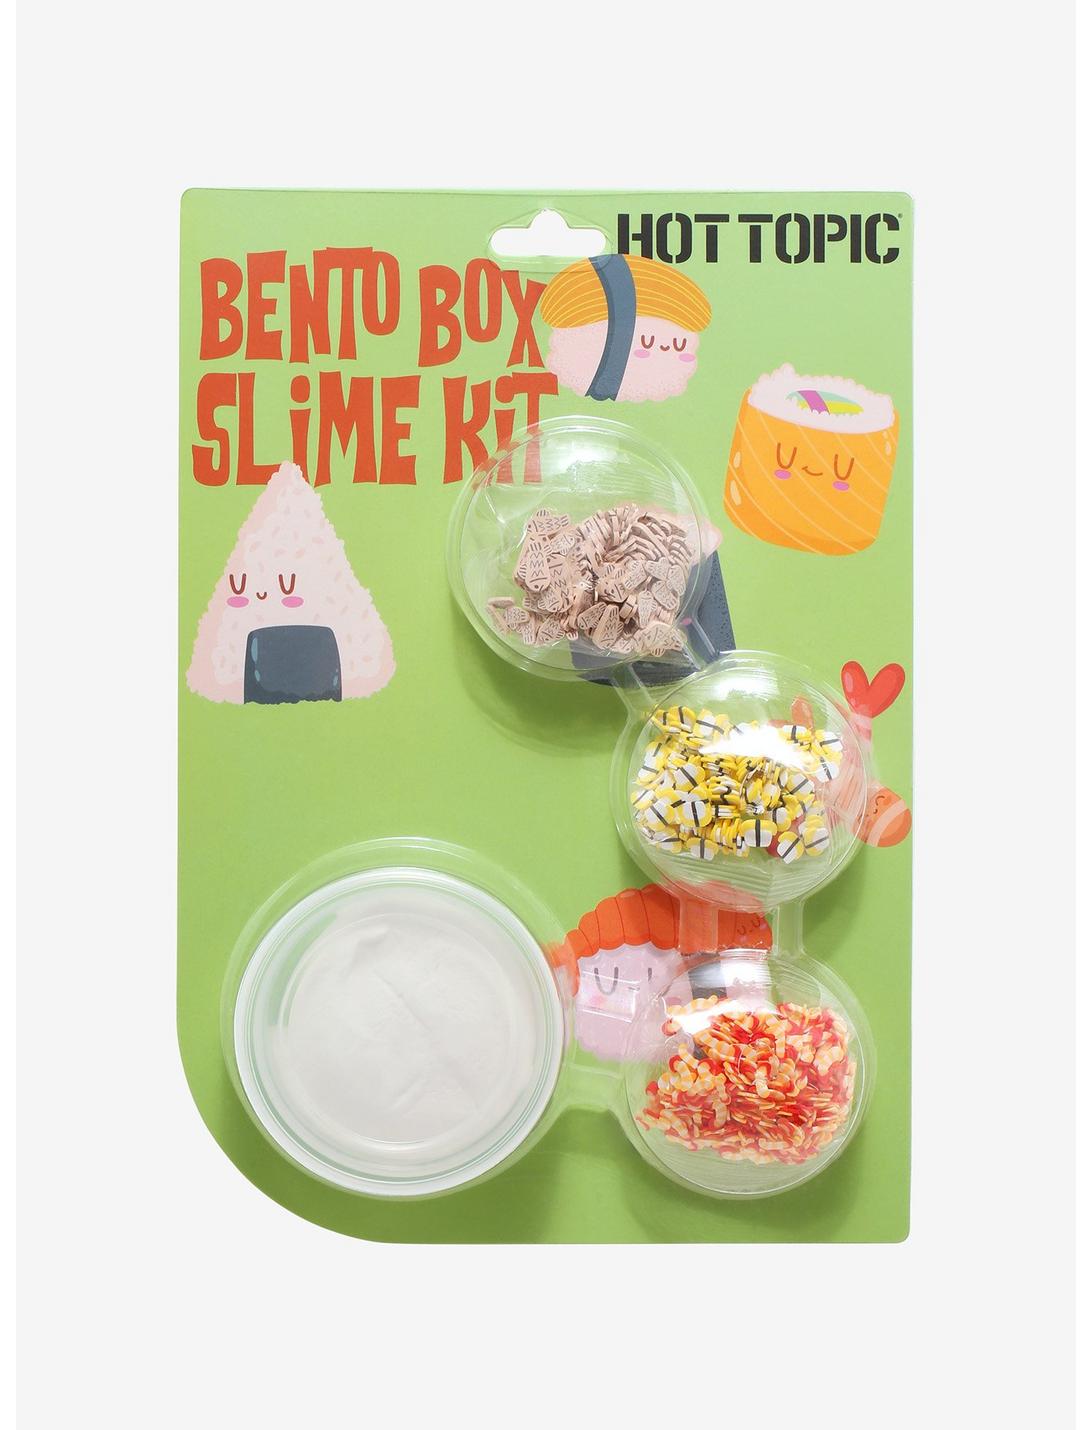 Bento Box Slime Kit